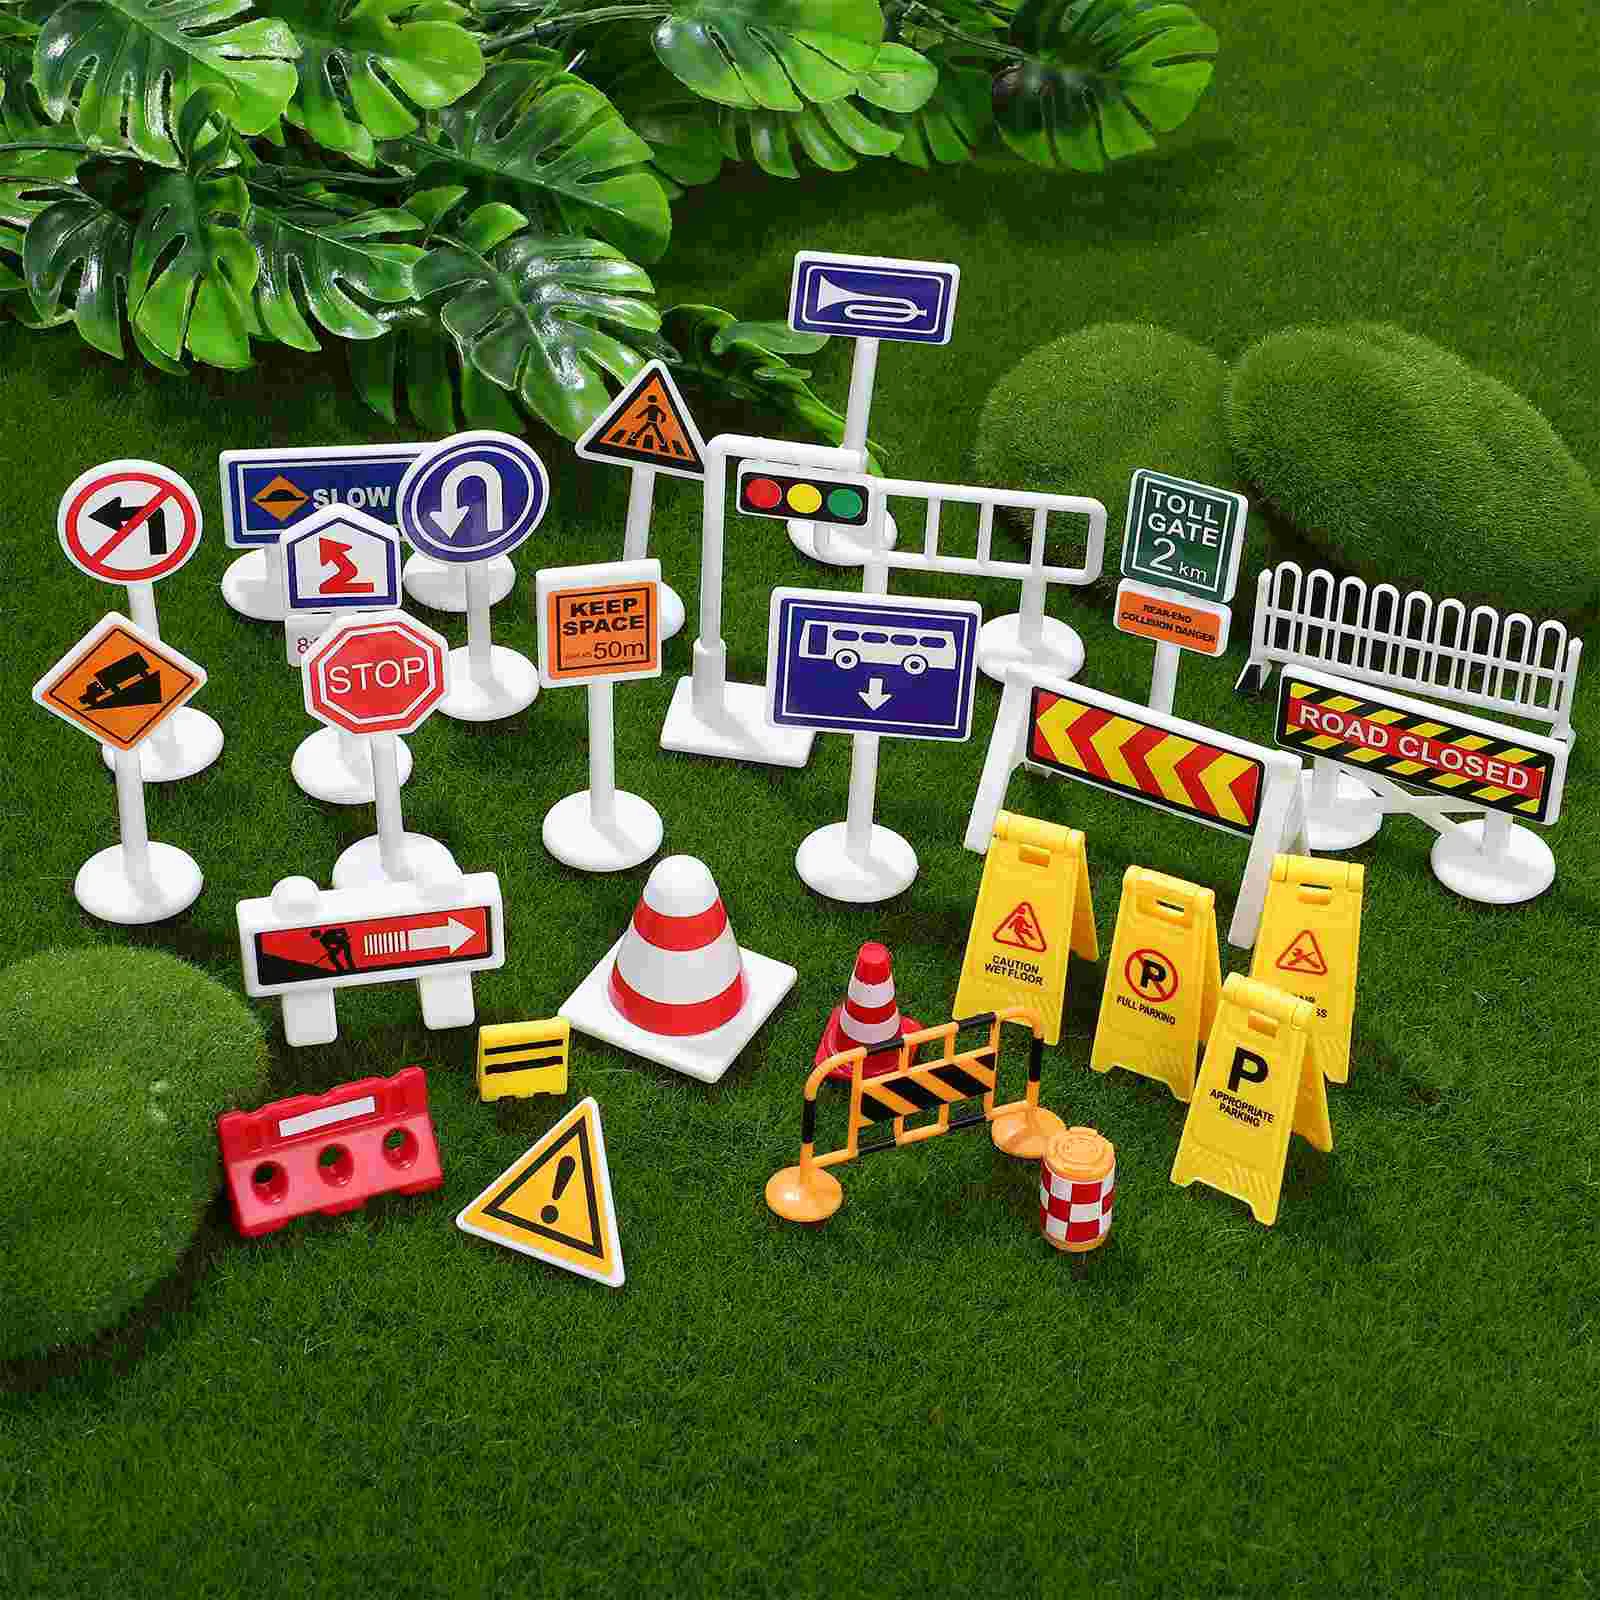 

Дорожные знаки, уличные знаки, наборы игрушек, модели дорожного движения для детей, знания о дорожном движении, товары для песочника